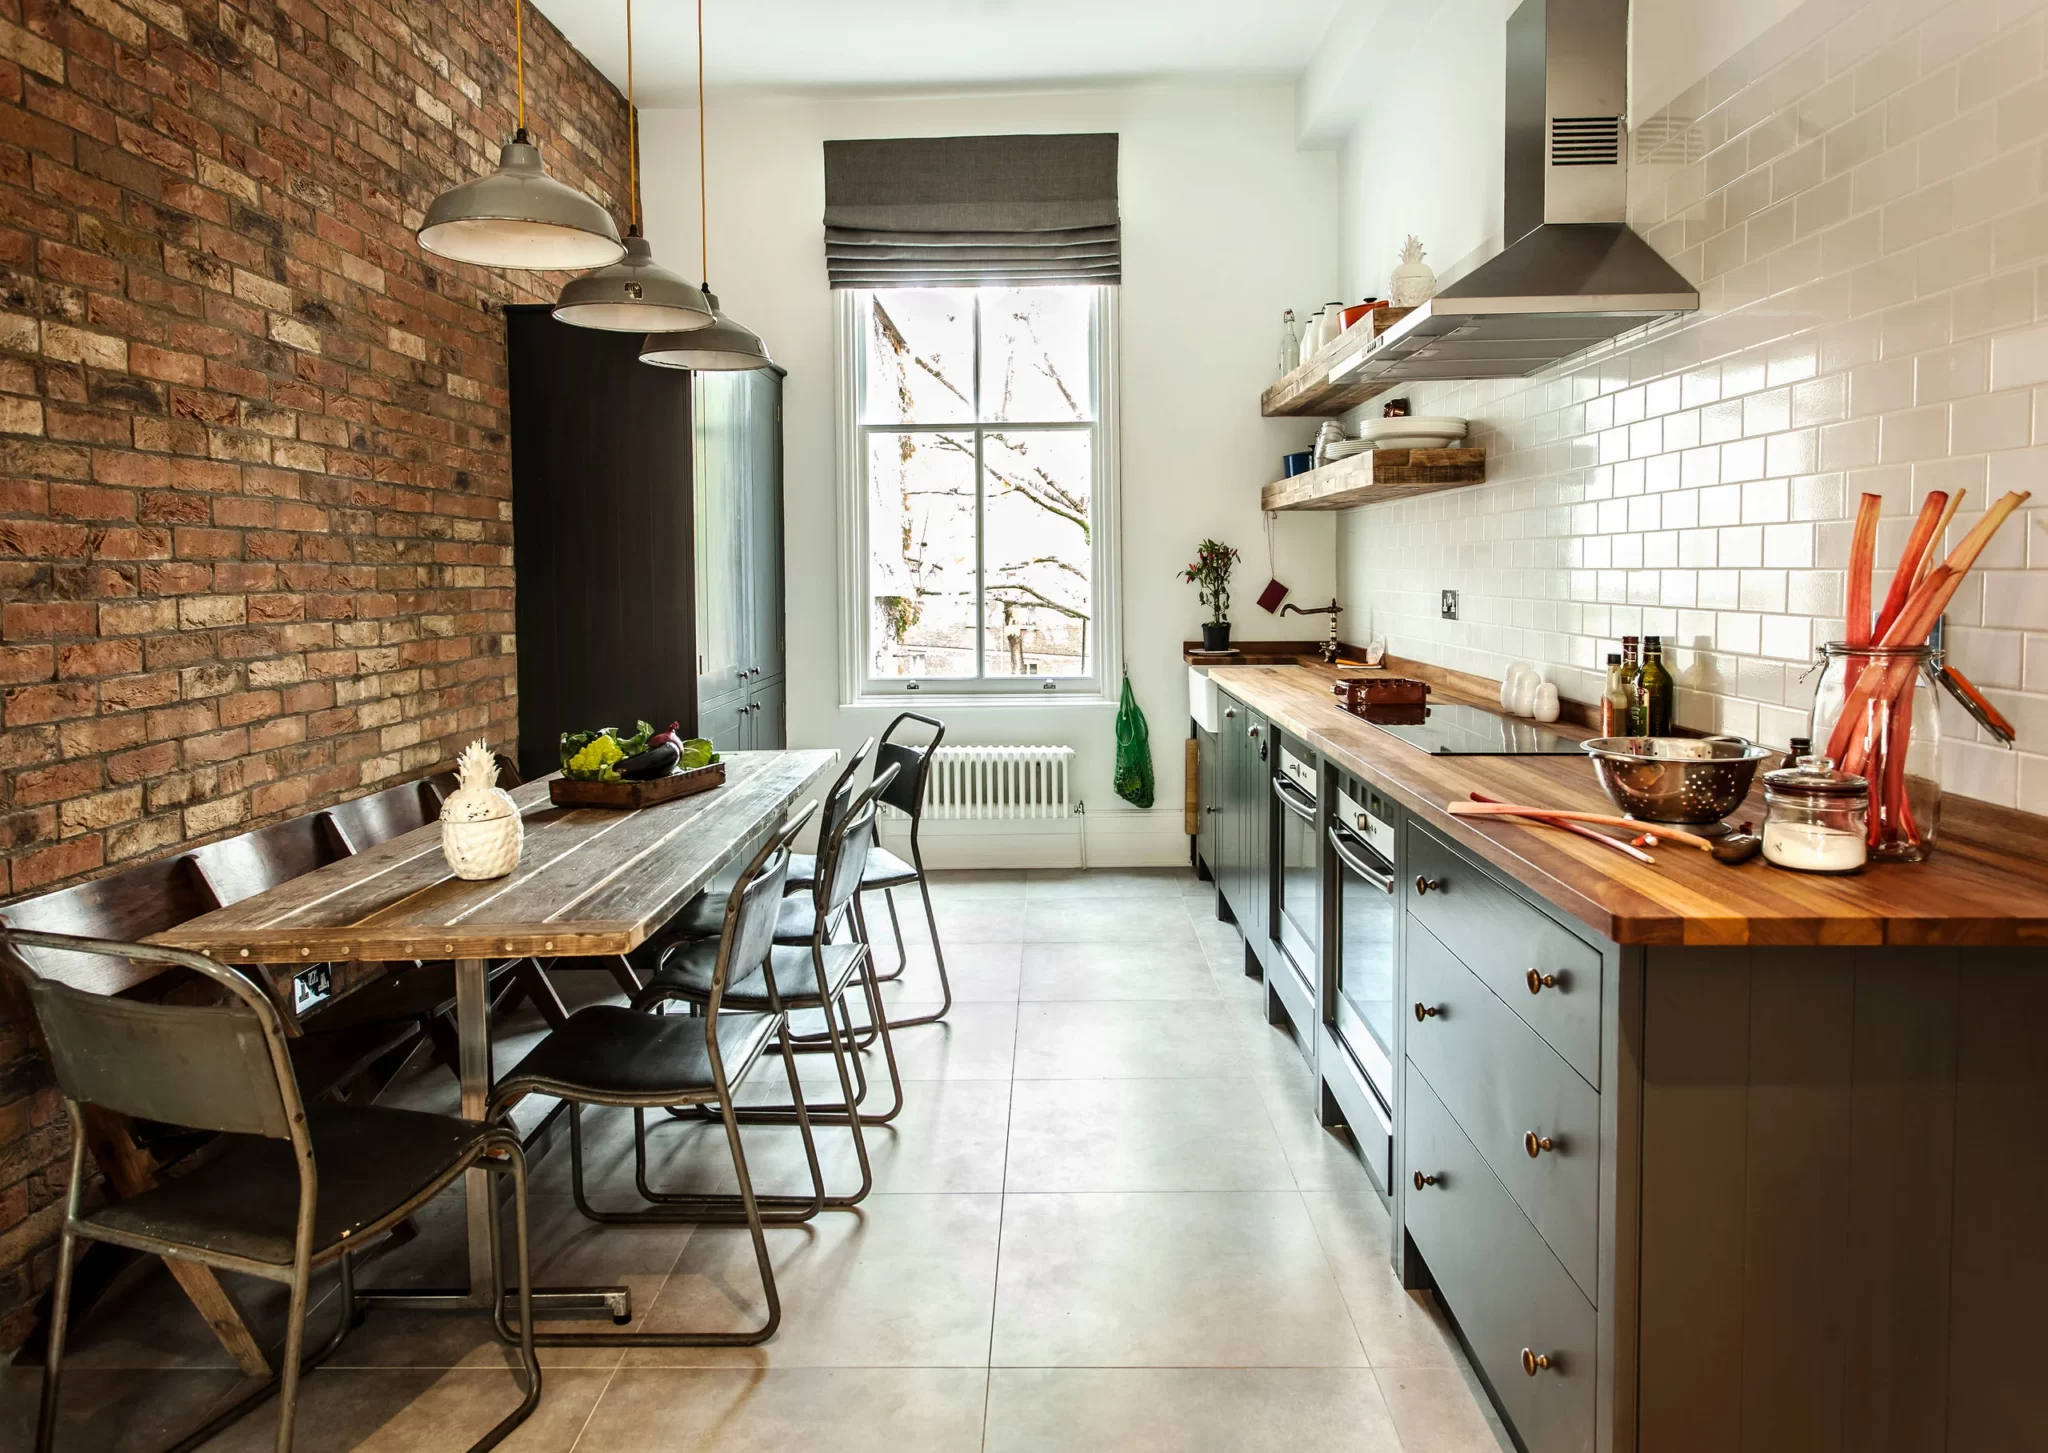 Кирпичная стена в интерьере кухни – 40 примеров удачных сочетаний